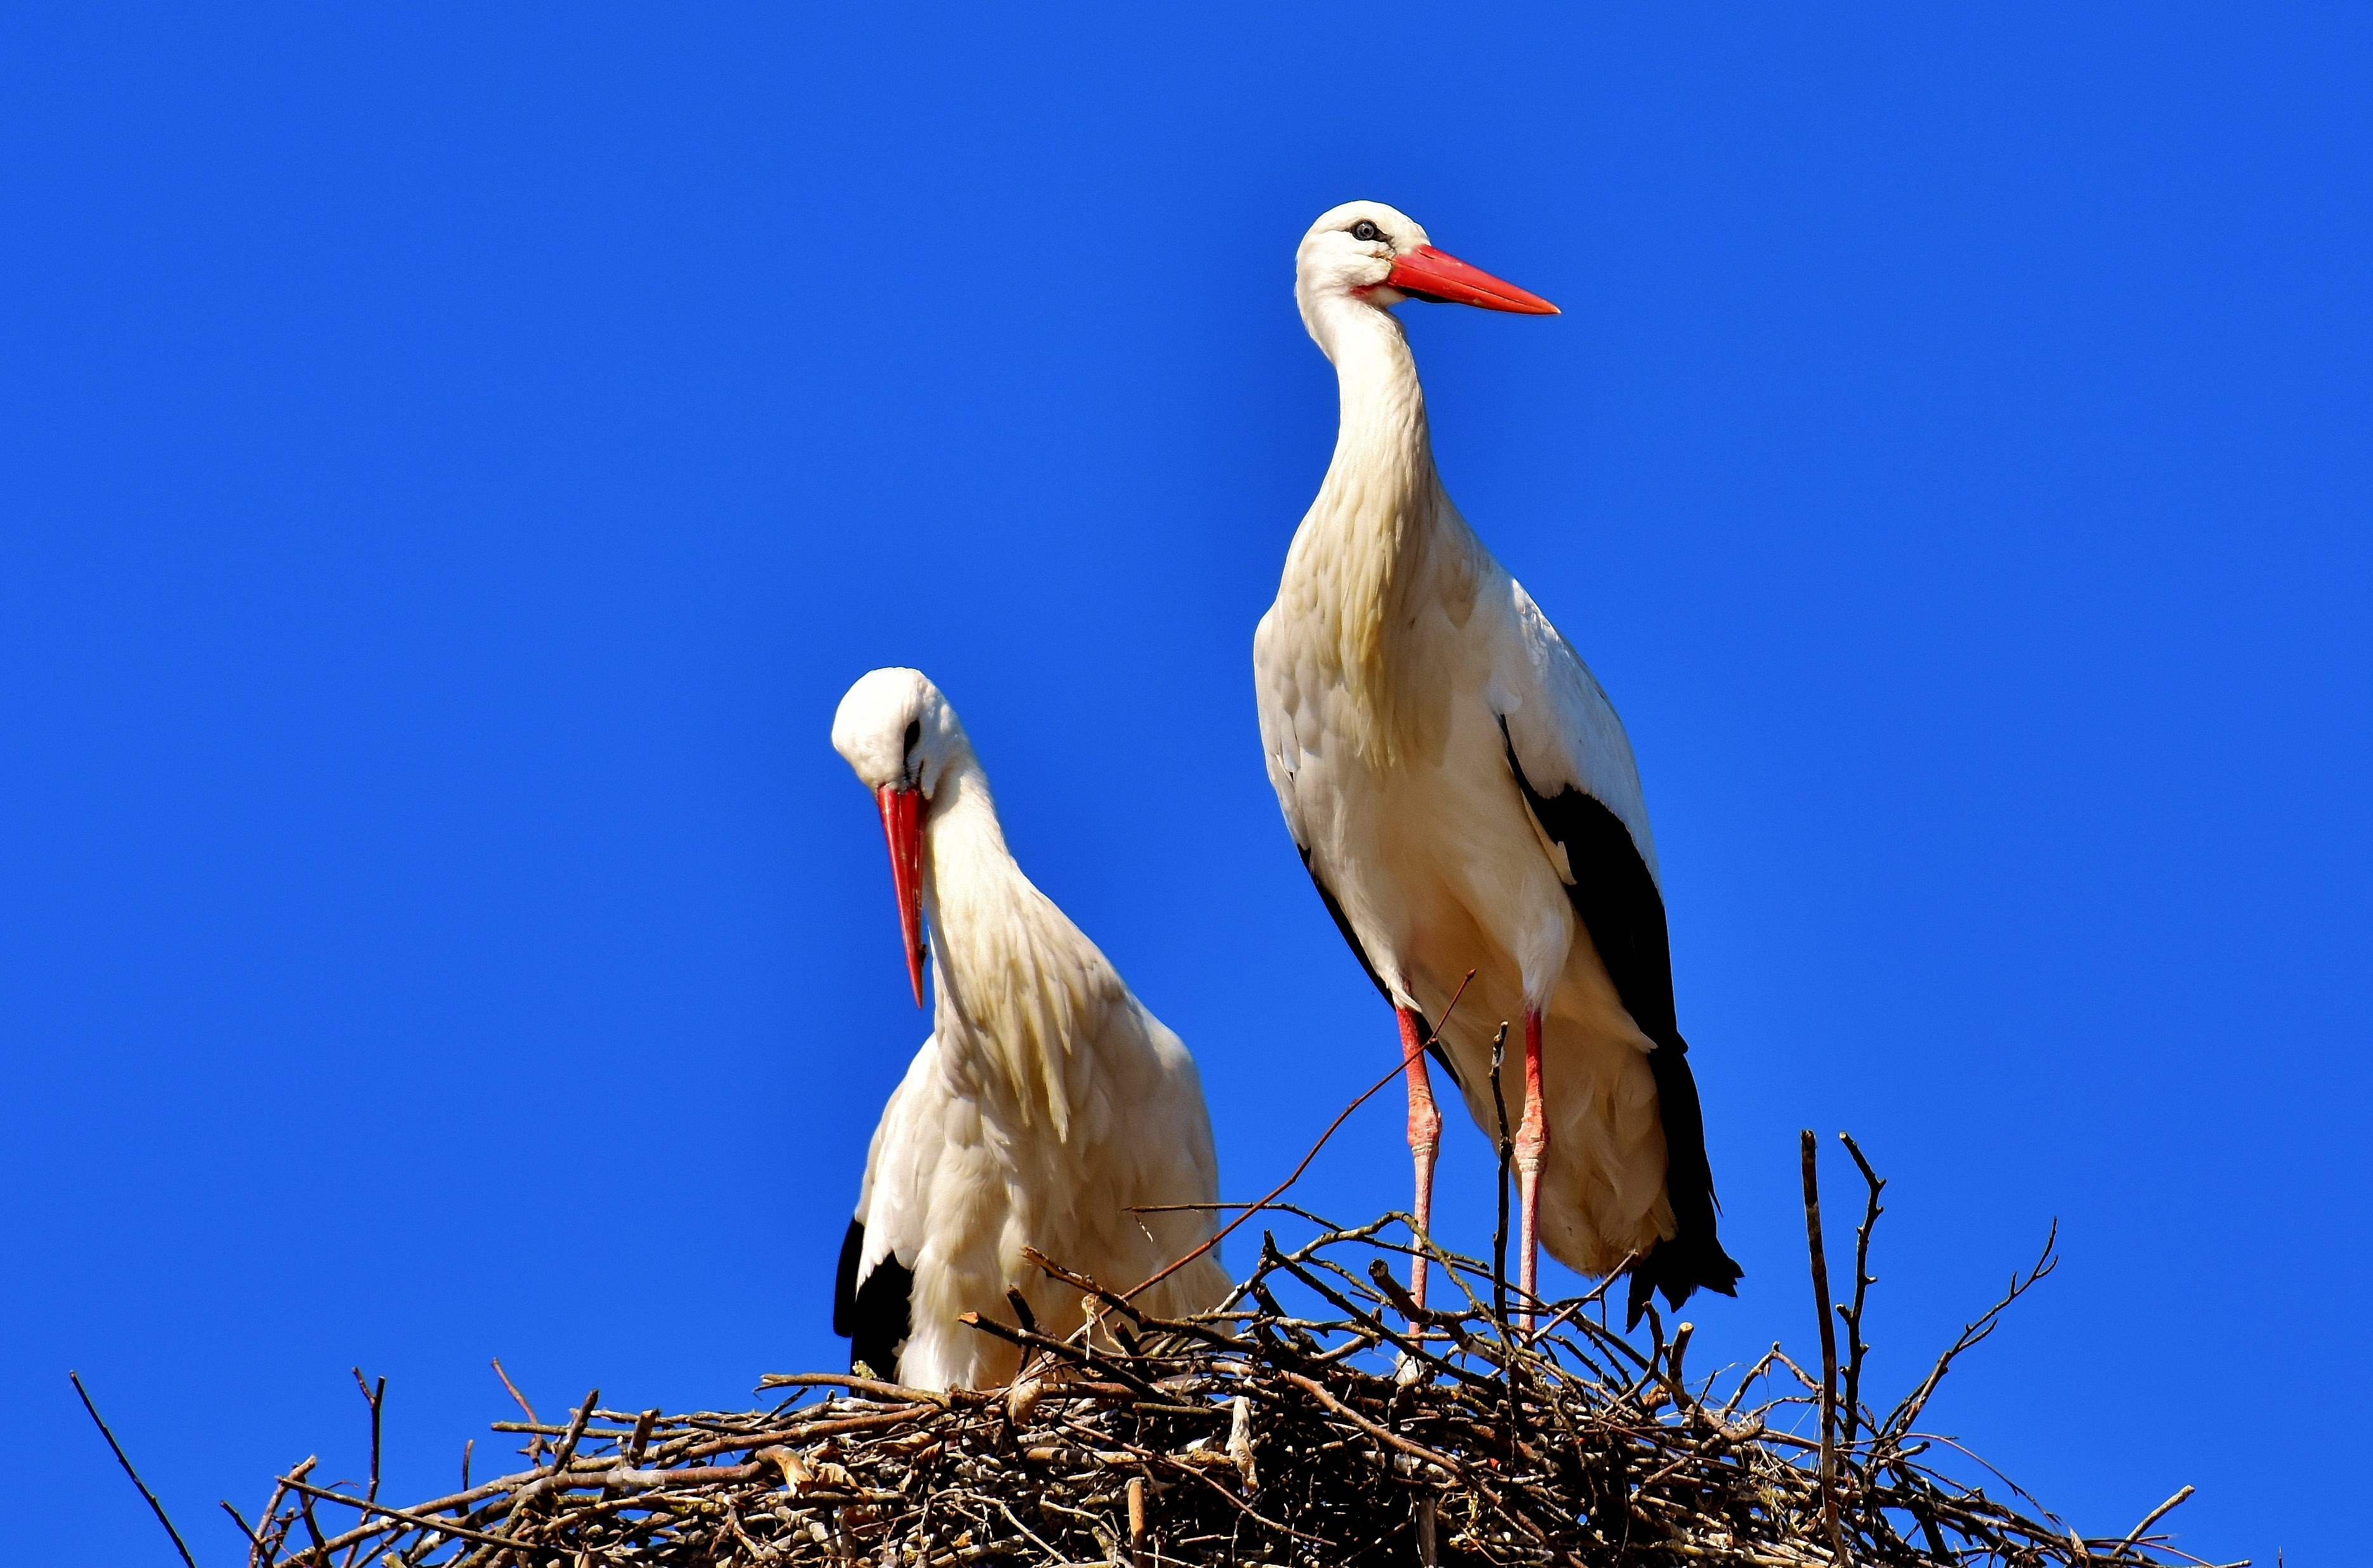 Storks - Bociany Obrazy , HD Wallpaper & Backgrounds